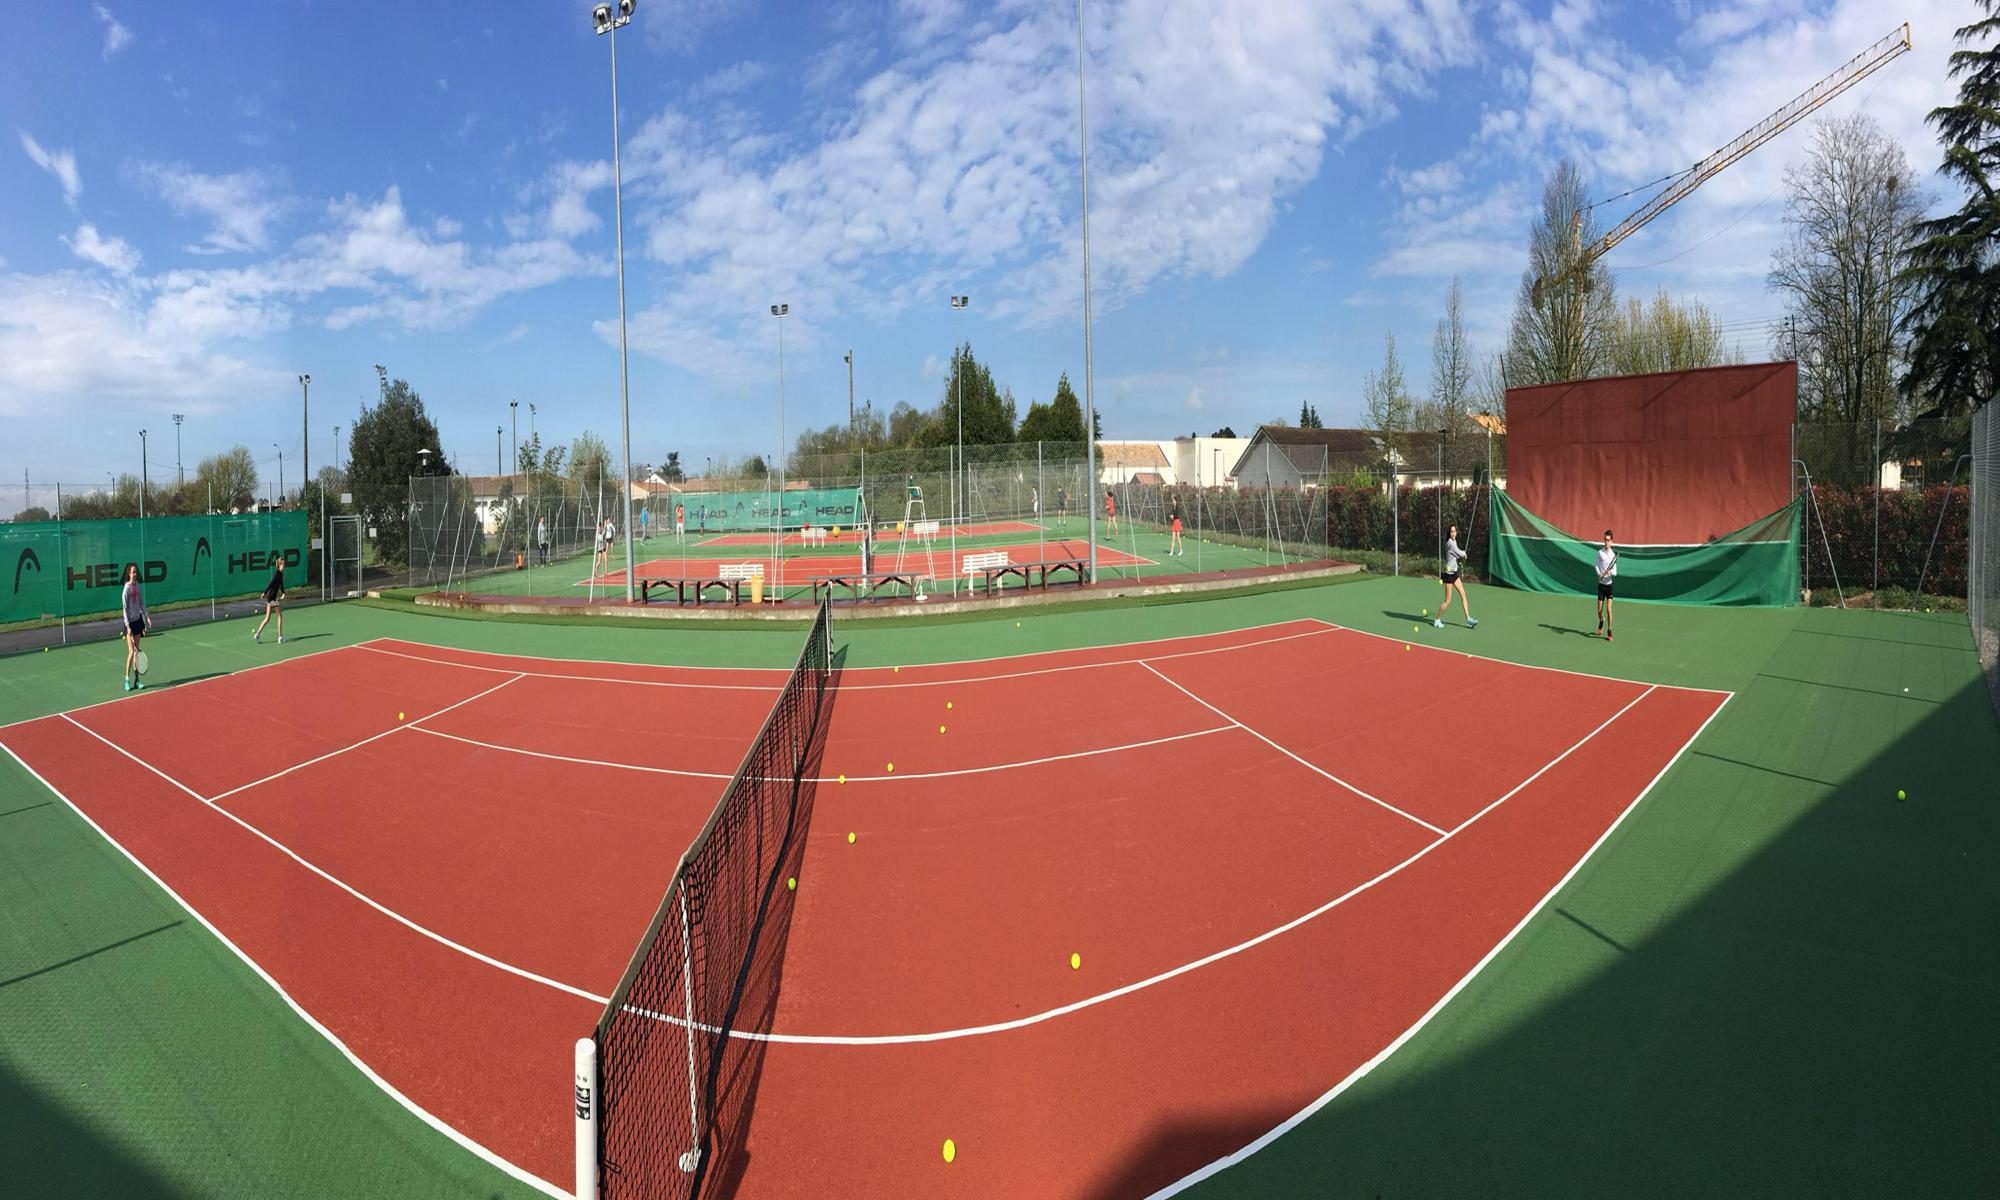 Tennis Club de Chauray